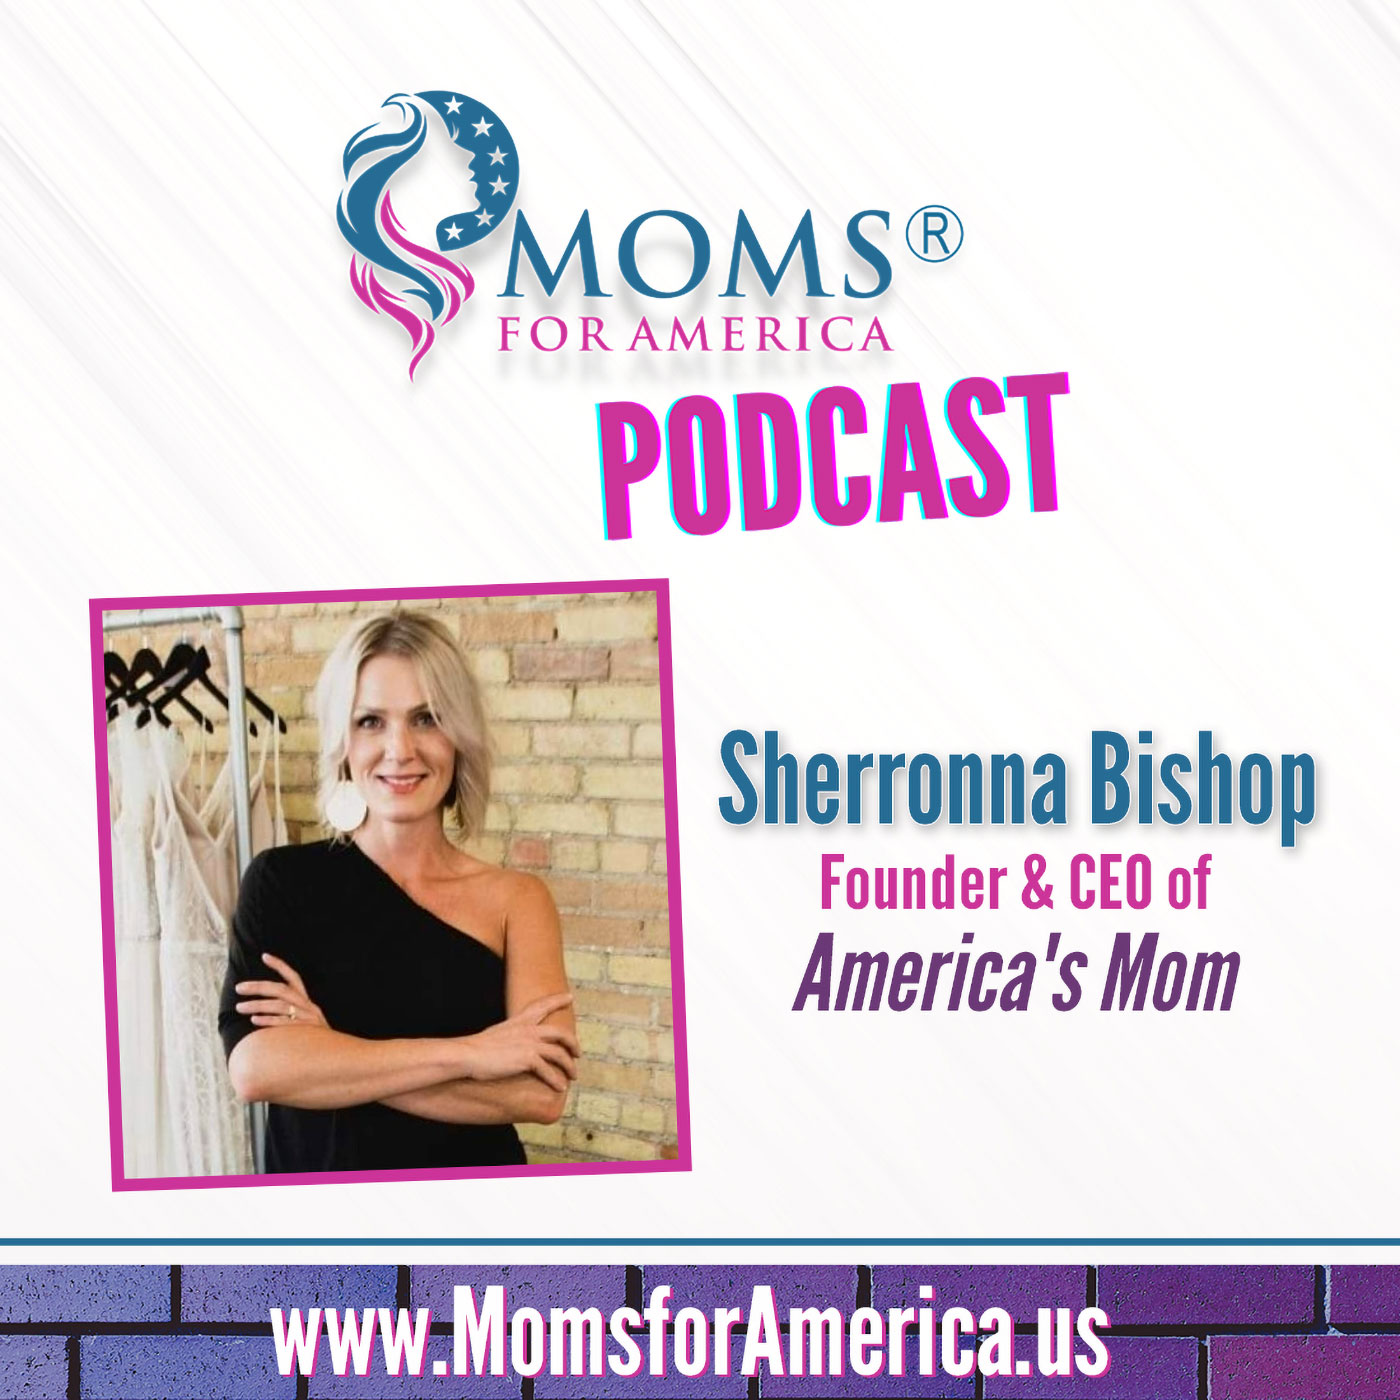 Artwork for podcast Moms for America Podcast